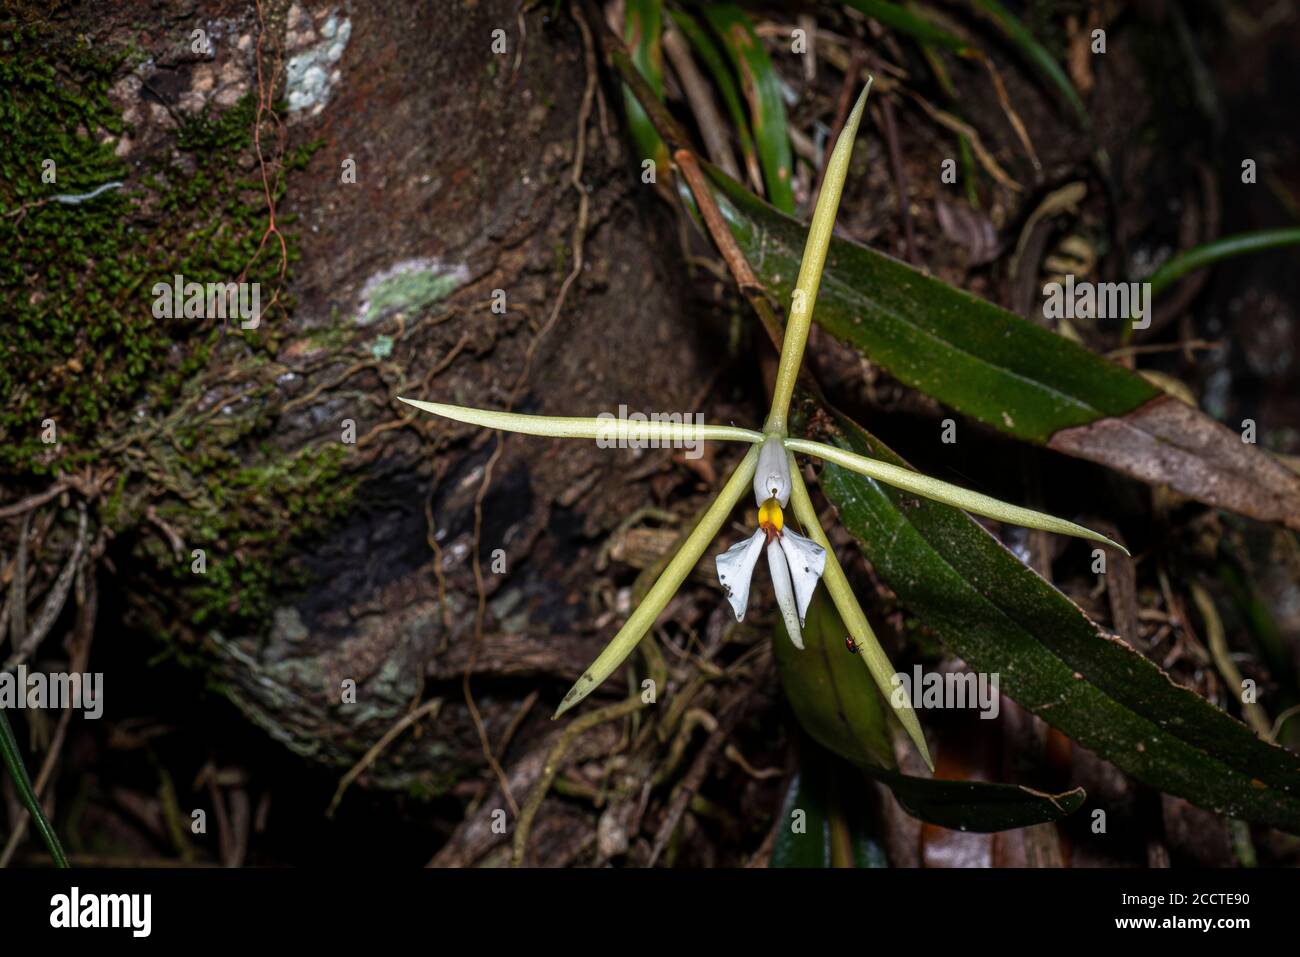 Epidendrum nocturnum - Night scented orchid Stock Photo